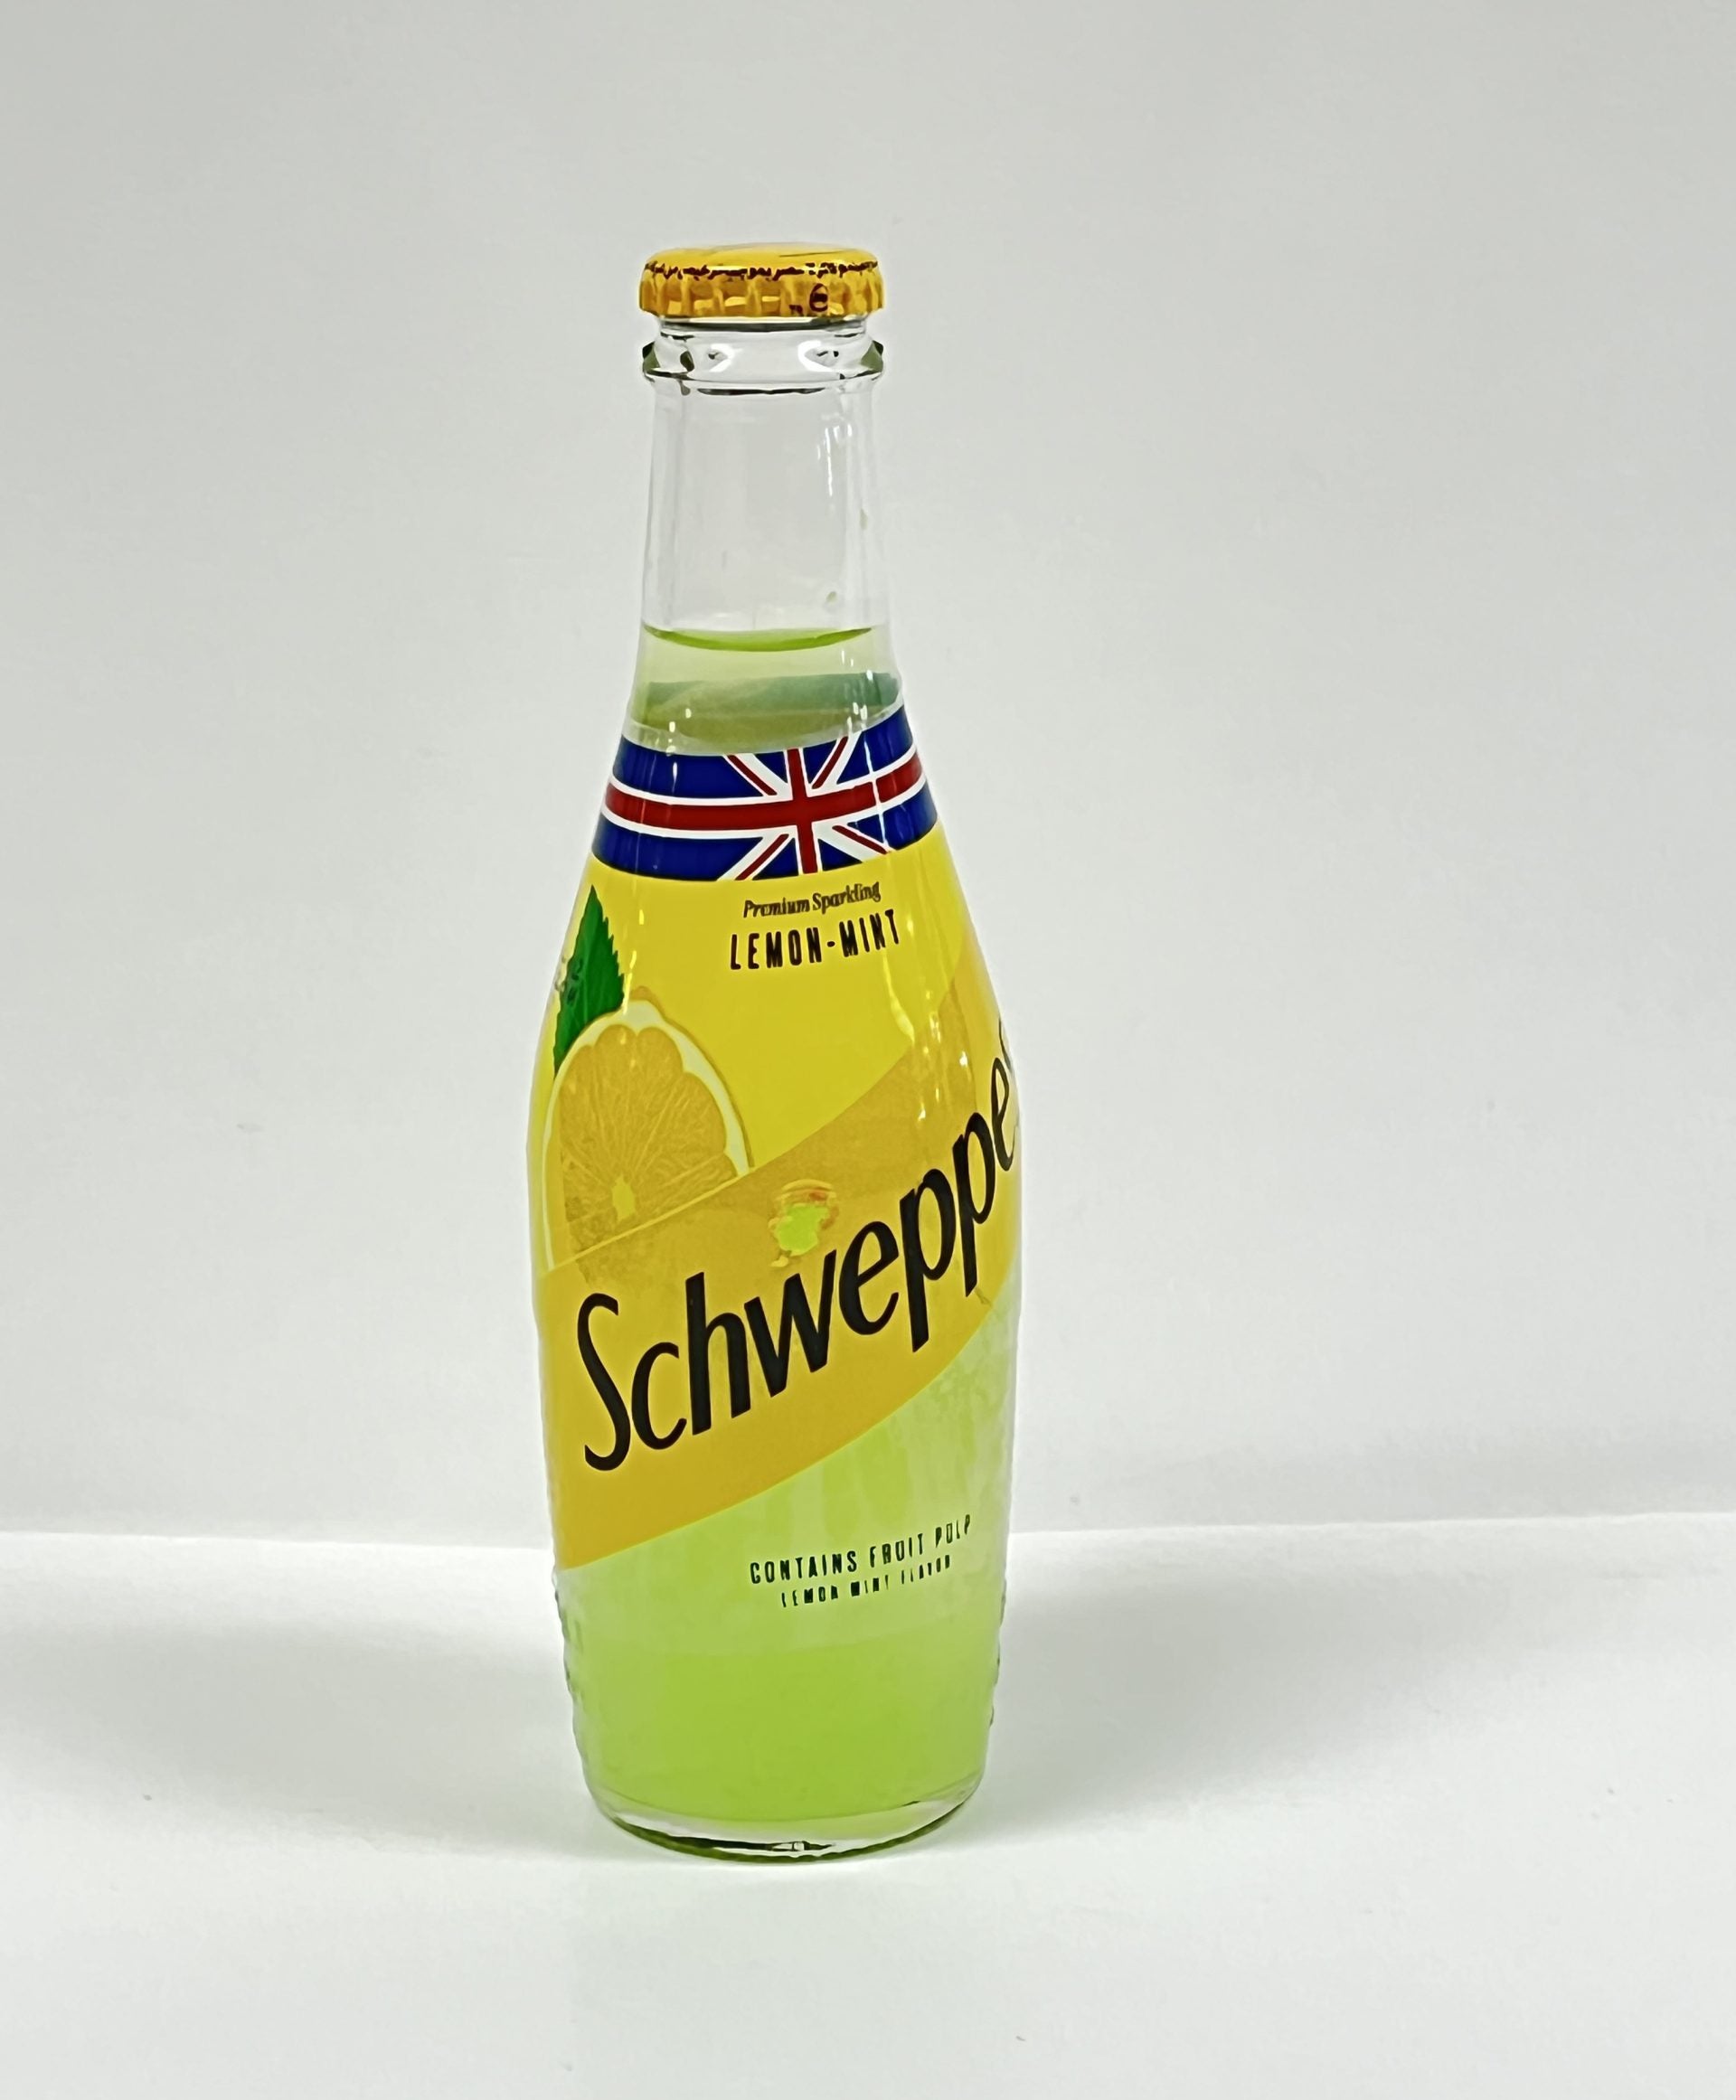 Schweppes Lemon Mint Glass bottle